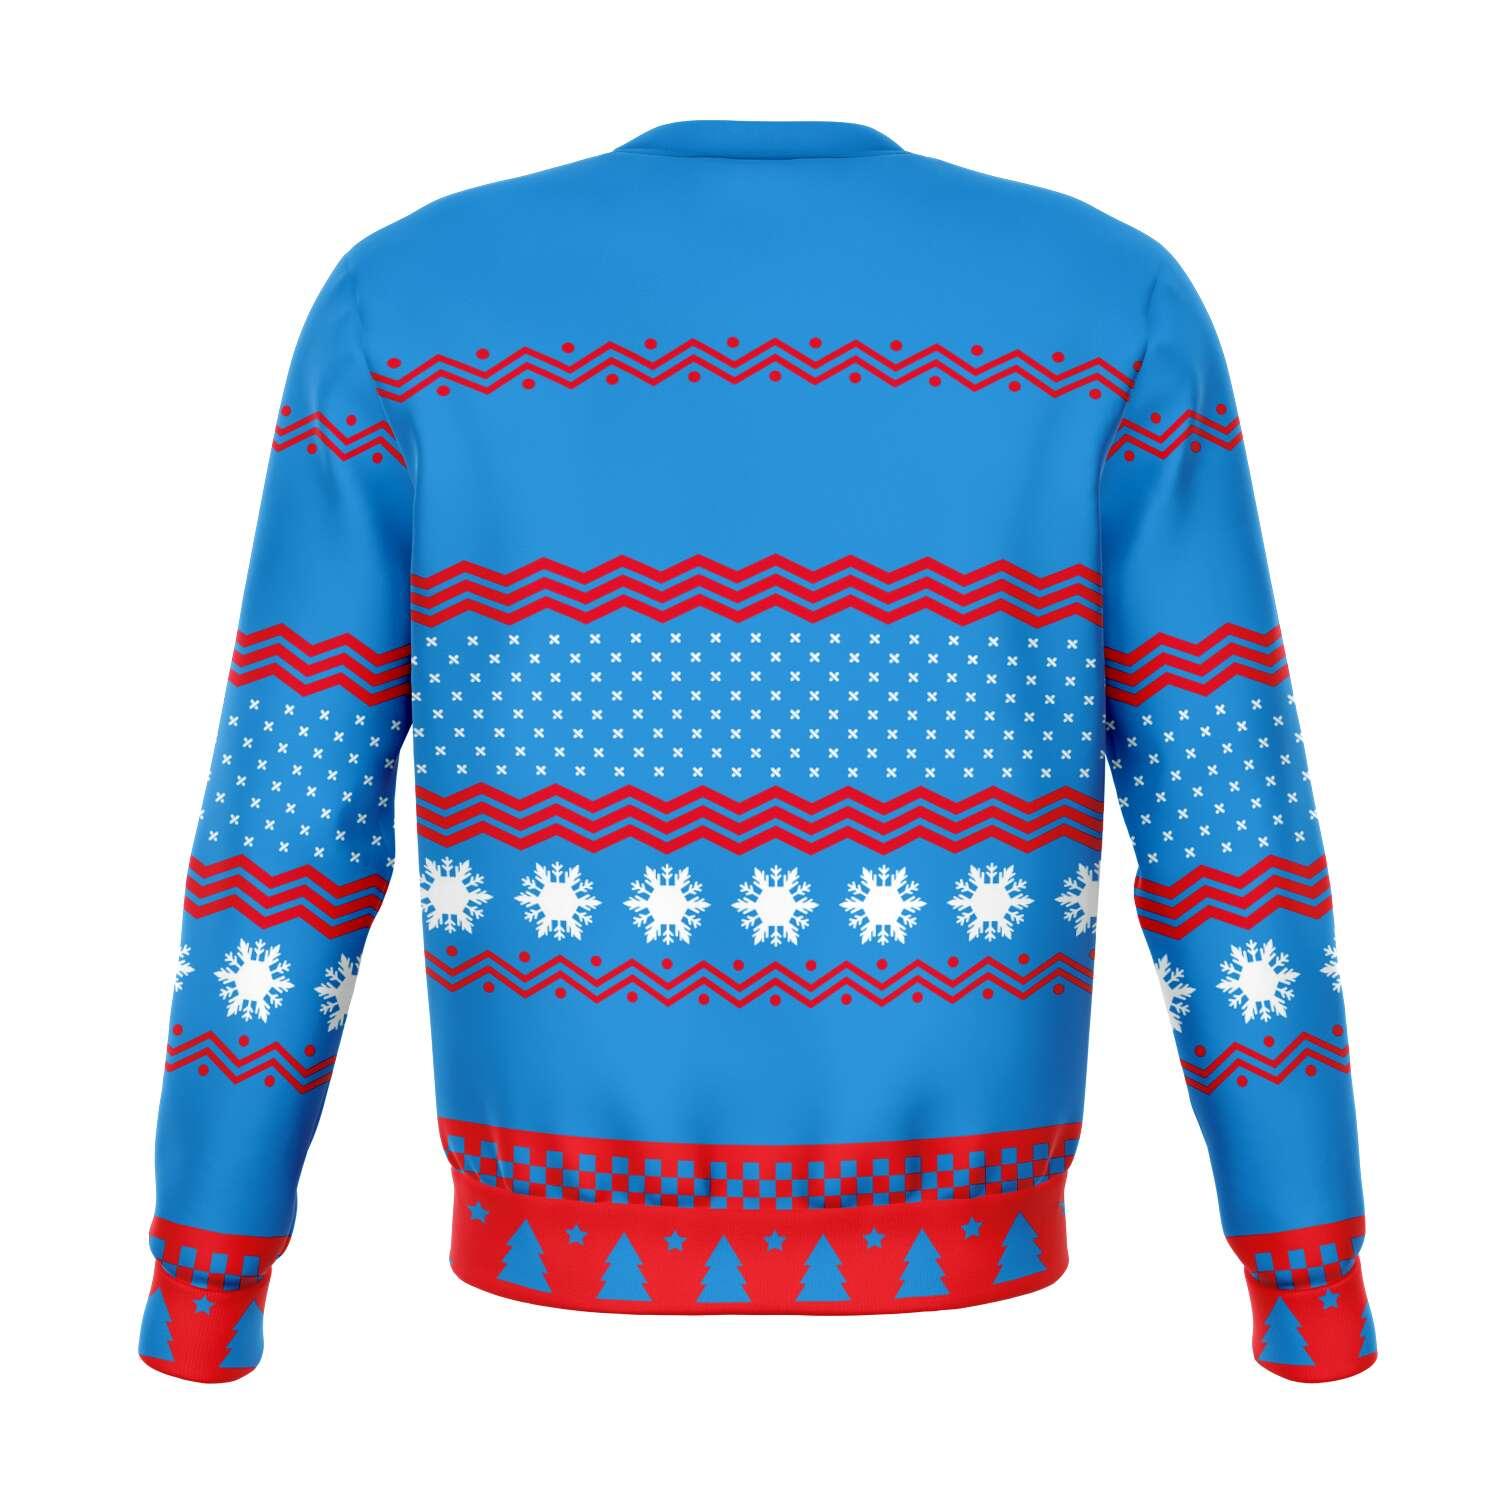 Meowy Christmas Unisex Ugly Christmas Sweatshirt